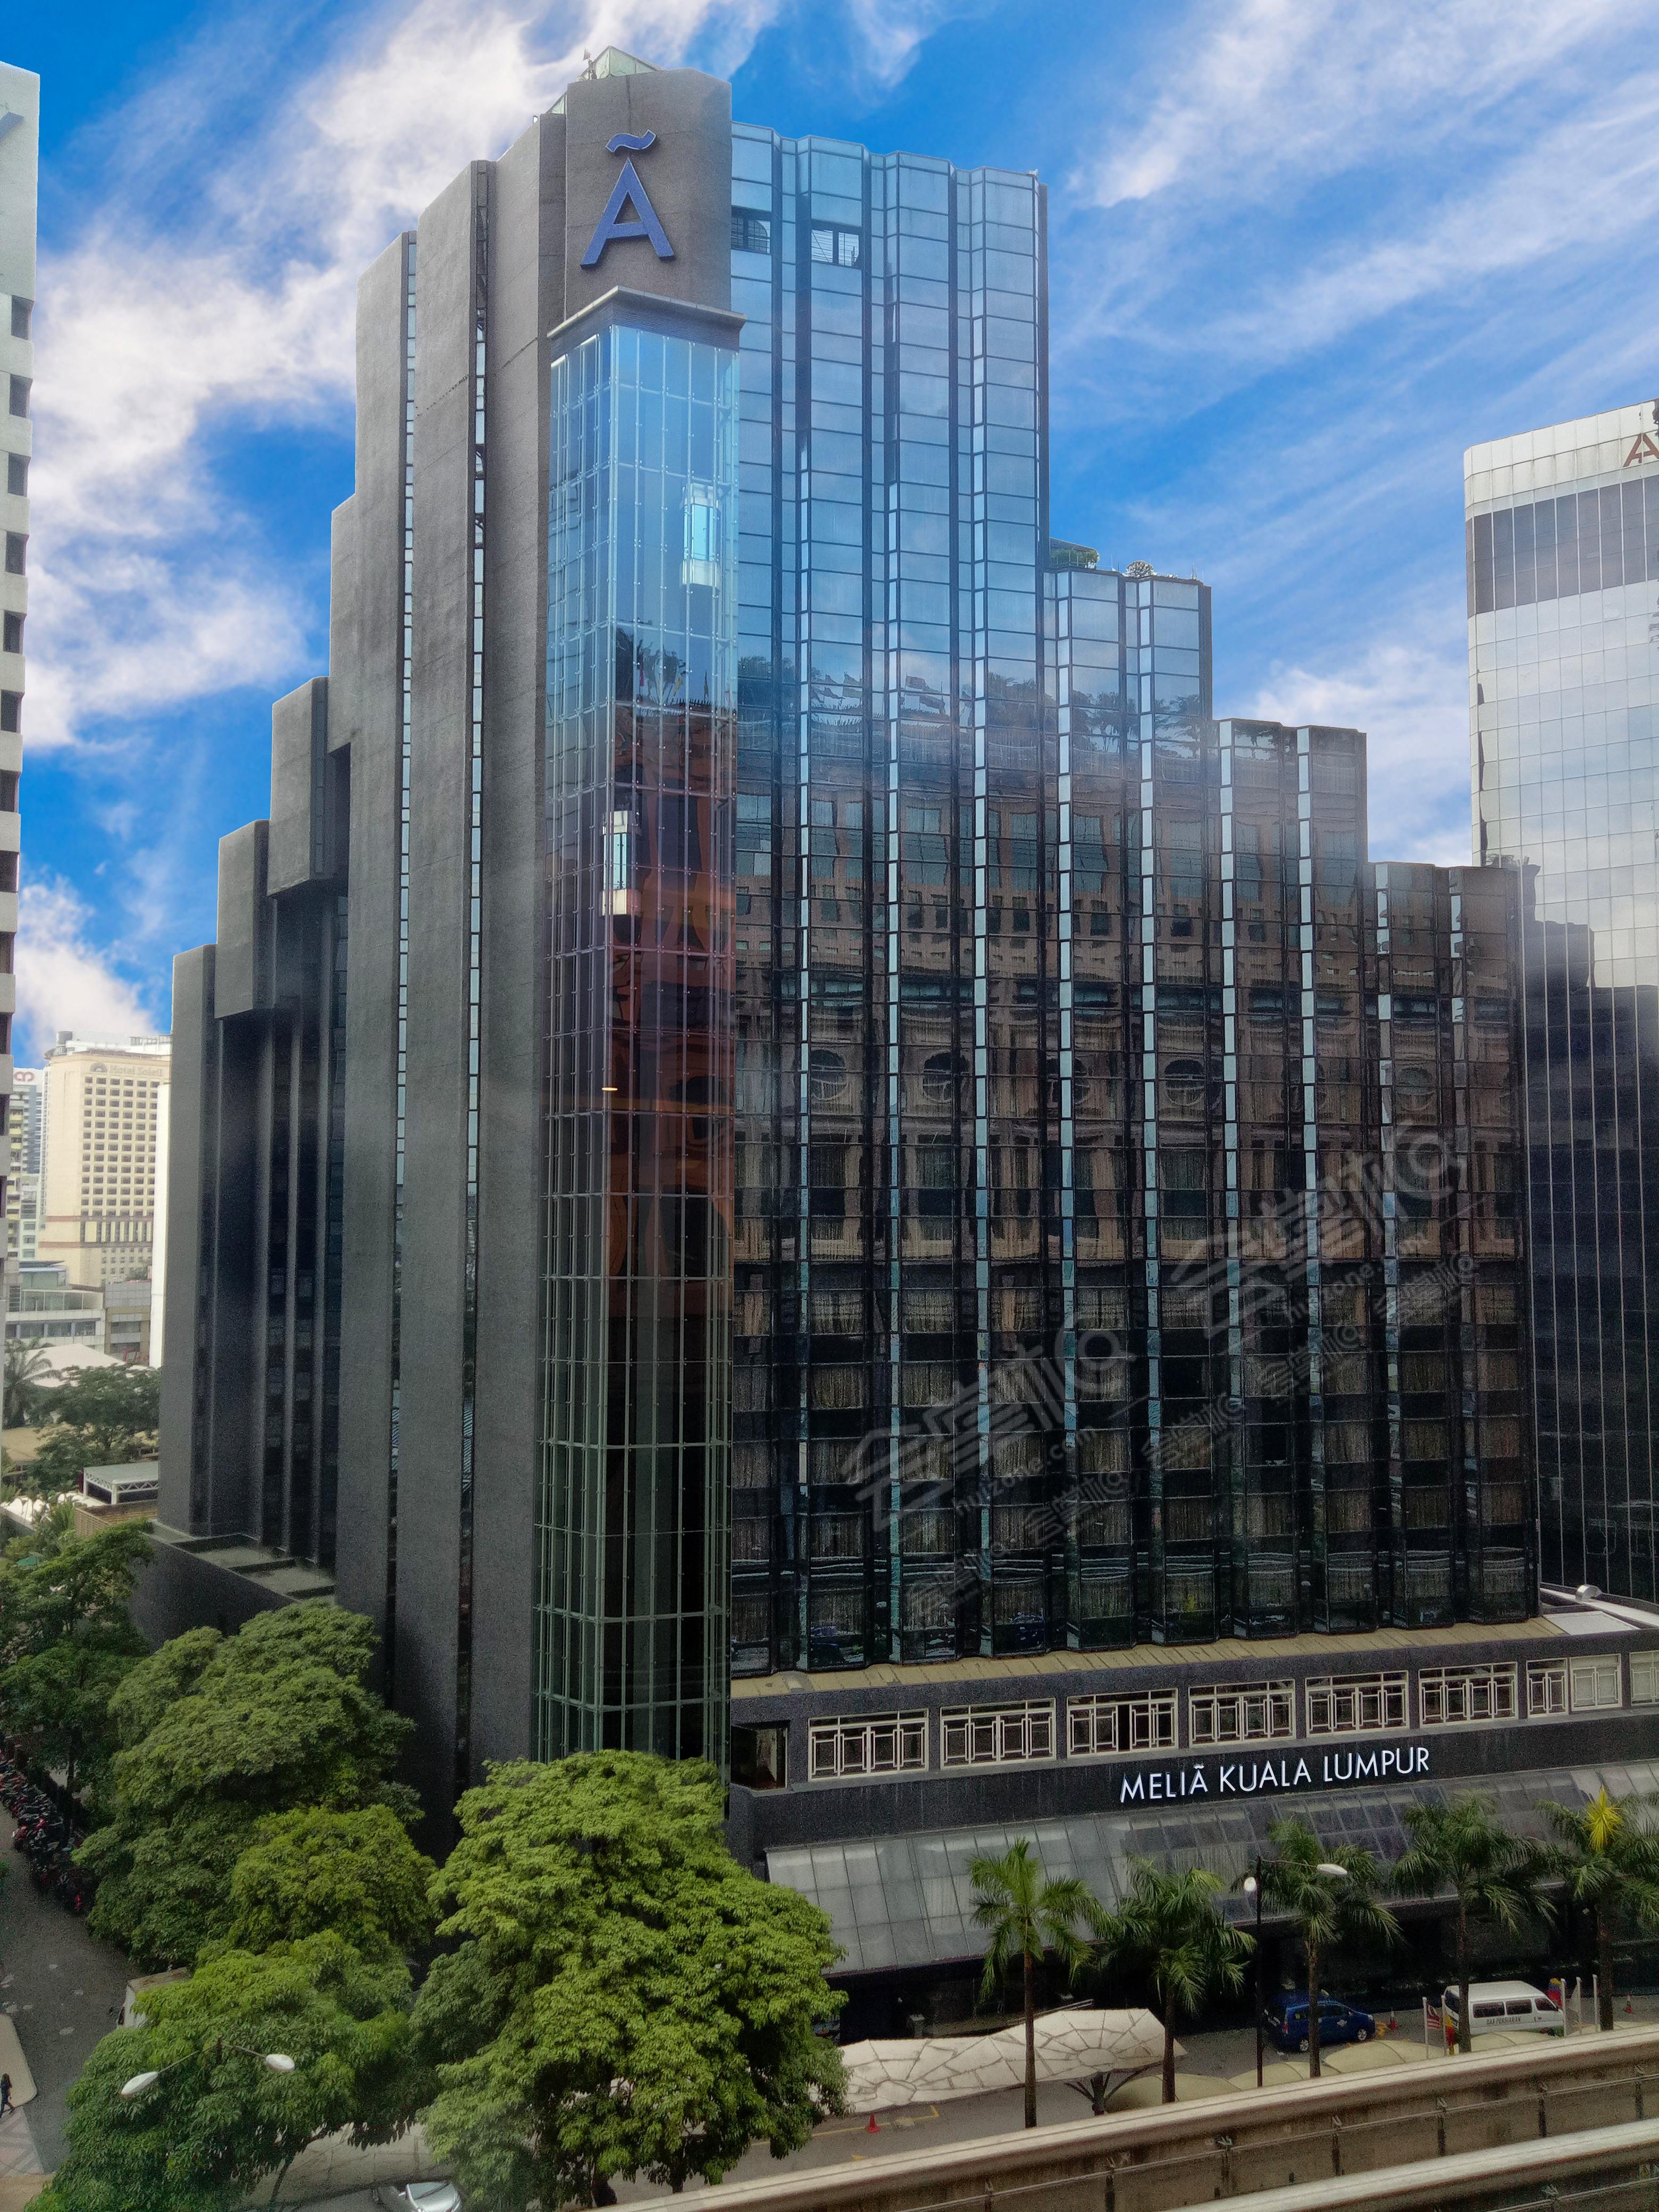 吉隆坡四星级酒店最大容纳200人的会议场地|吉隆坡美利亚酒店(Meliá Kuala Lumpur)的价格与联系方式